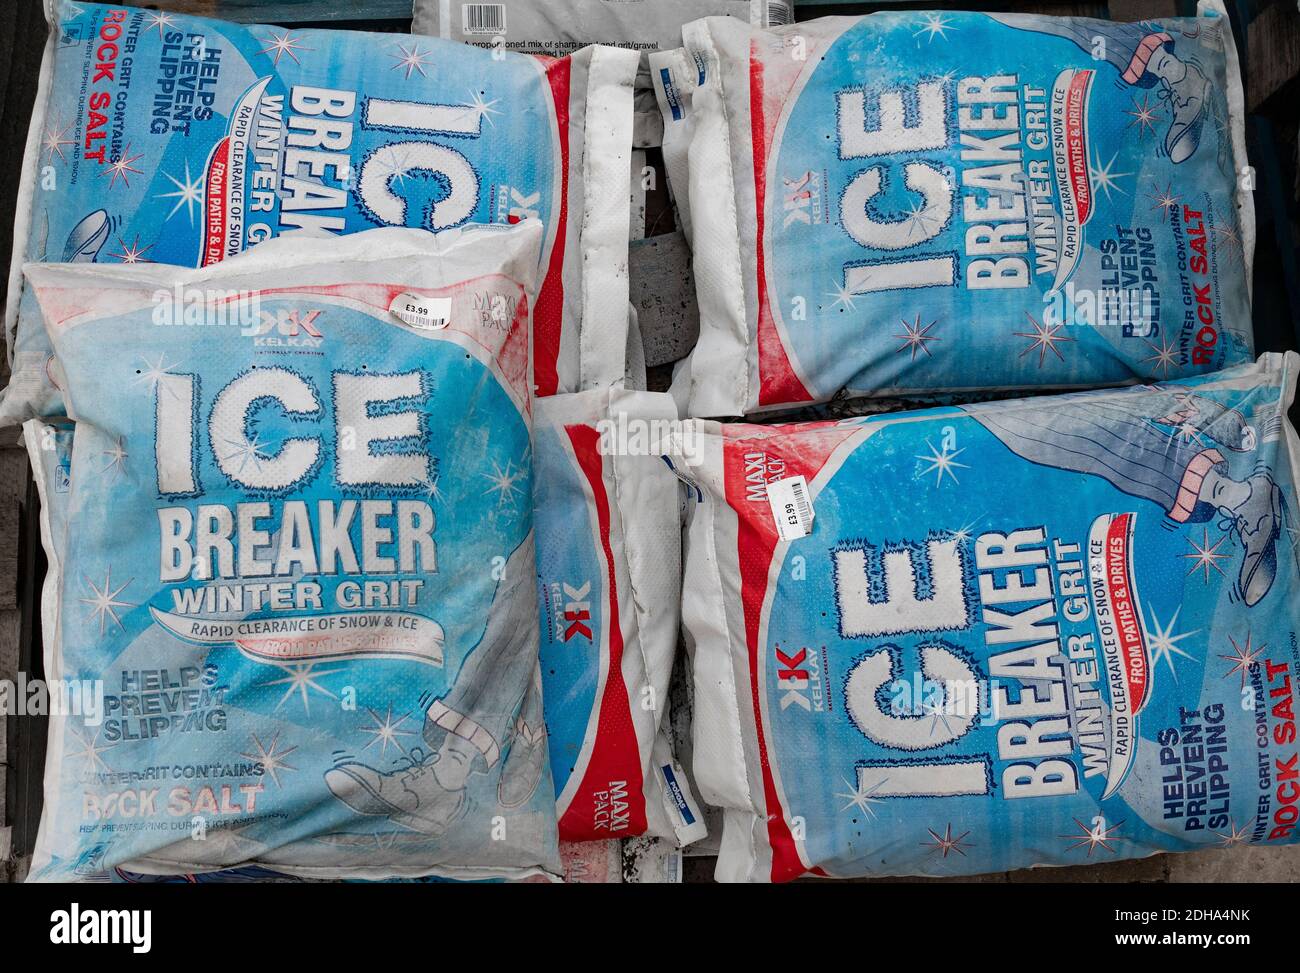 Pila de bolsas de hielo invernal rompedora grit para despejar los caminos y reducir el riesgo de resbalones, cubierta de escarcha y de venta en un Yorkshire Foto de stock